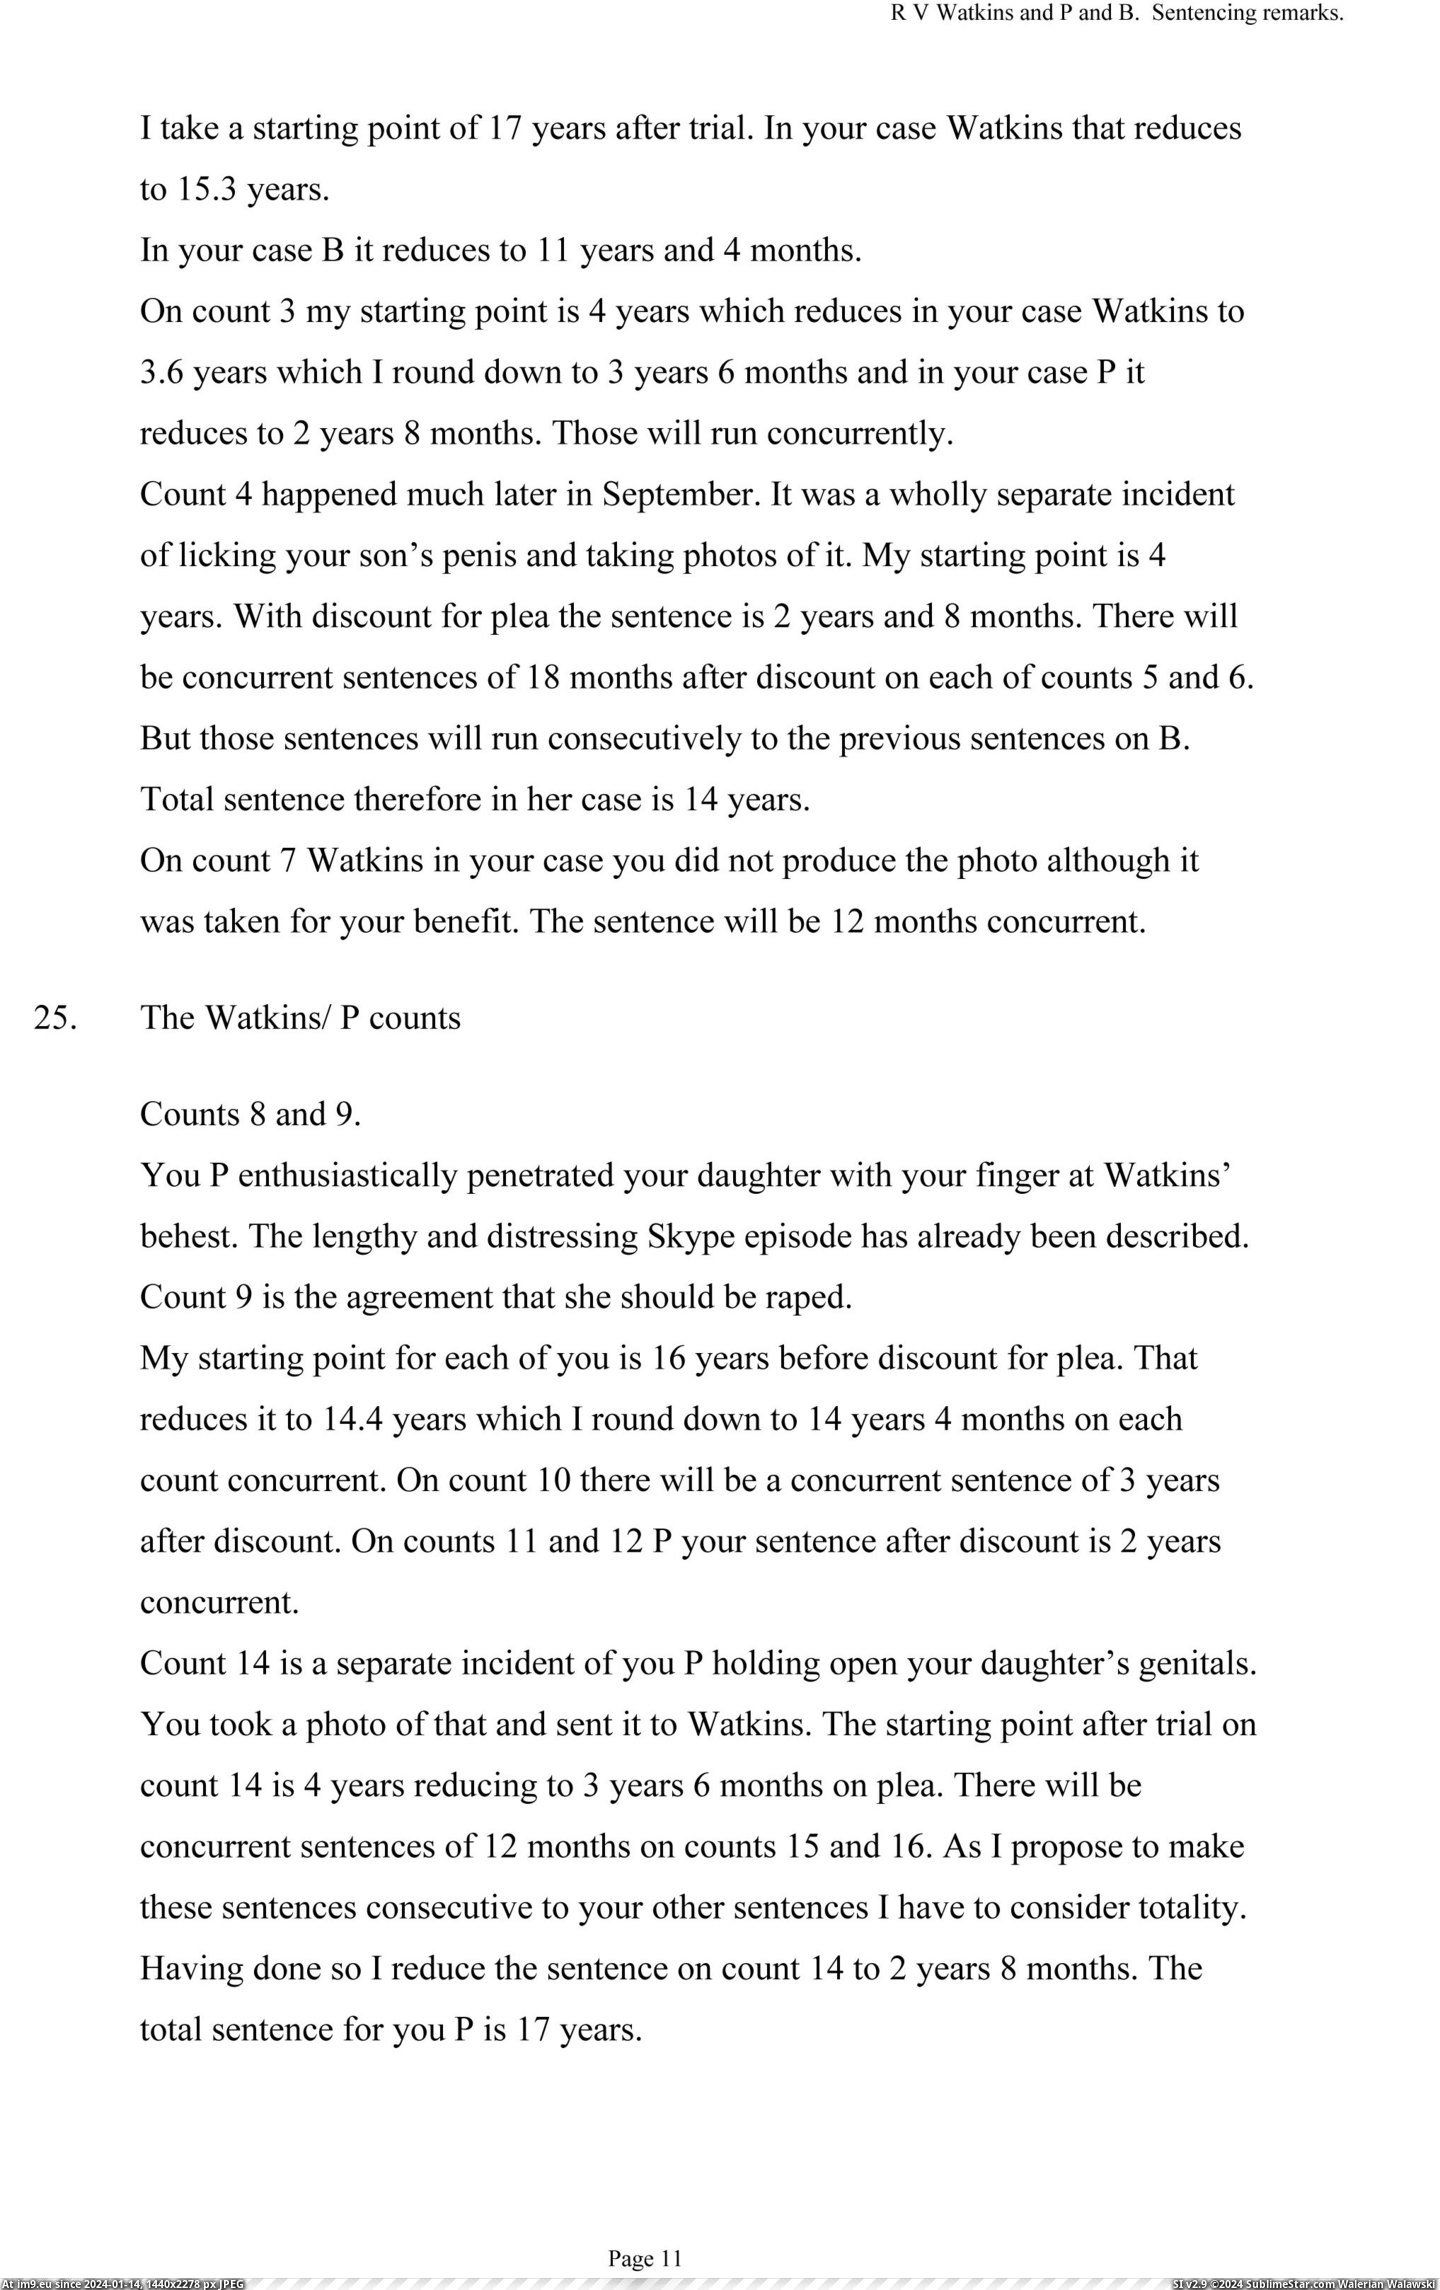 #Wtf #Justice #Sick #Statements #Sentencing #Ian #Watkins #Royce [Wtf] Justice Royce's sentencing statements on Ian Watkins. Sick. 12 Pic. (Bild von album My r/WTF favs))